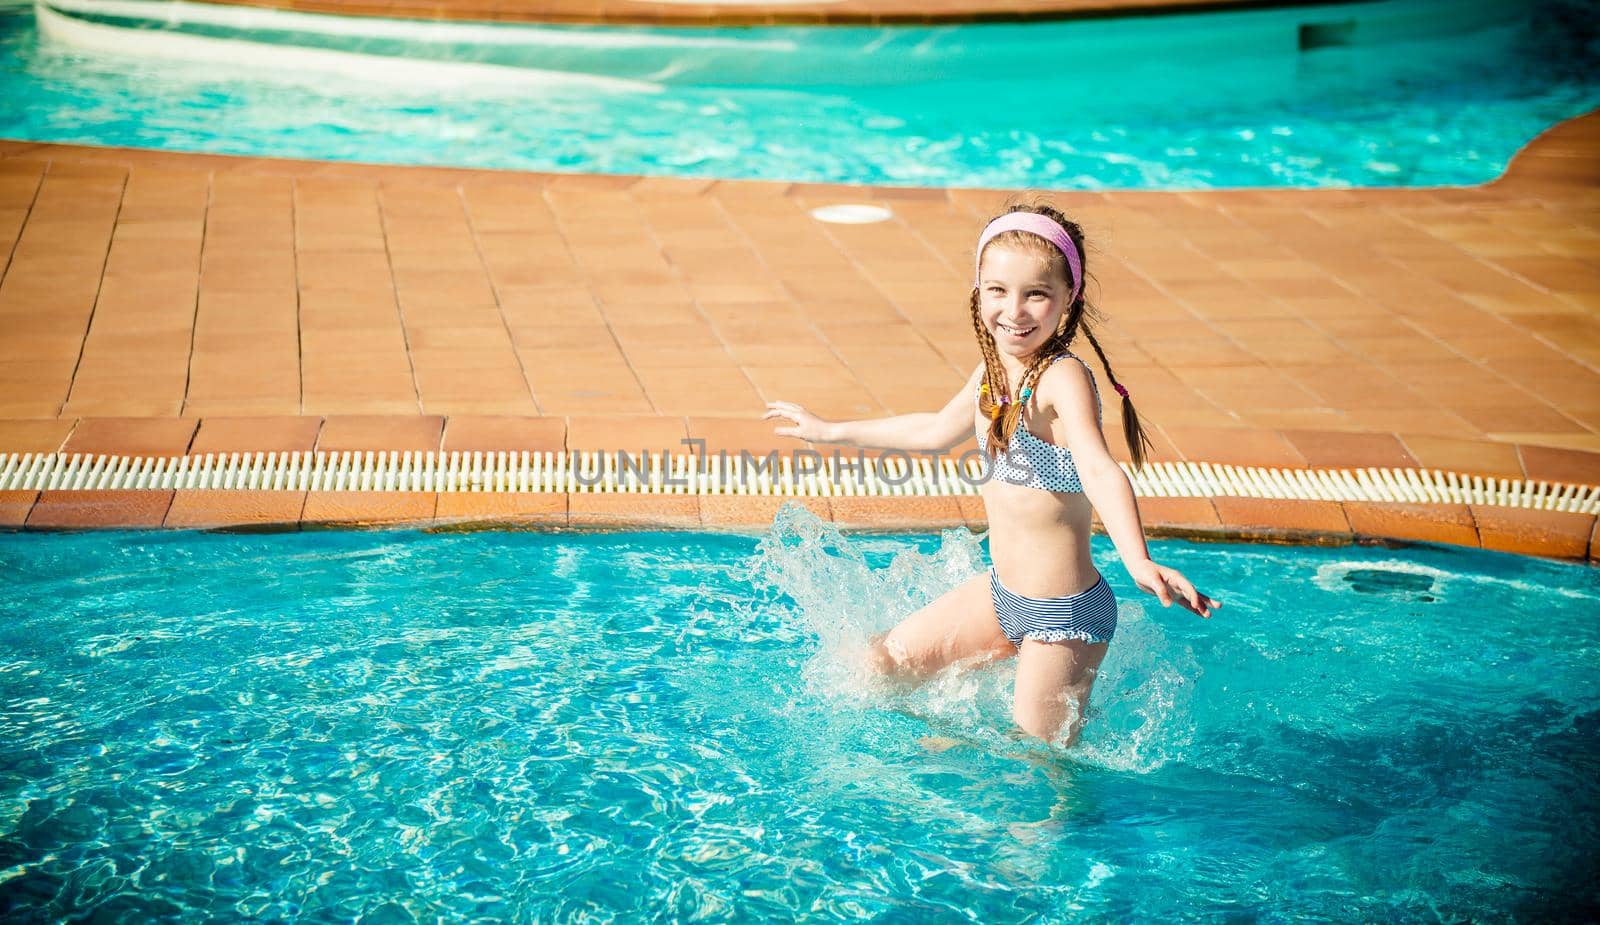 happy gir in the pool by GekaSkr